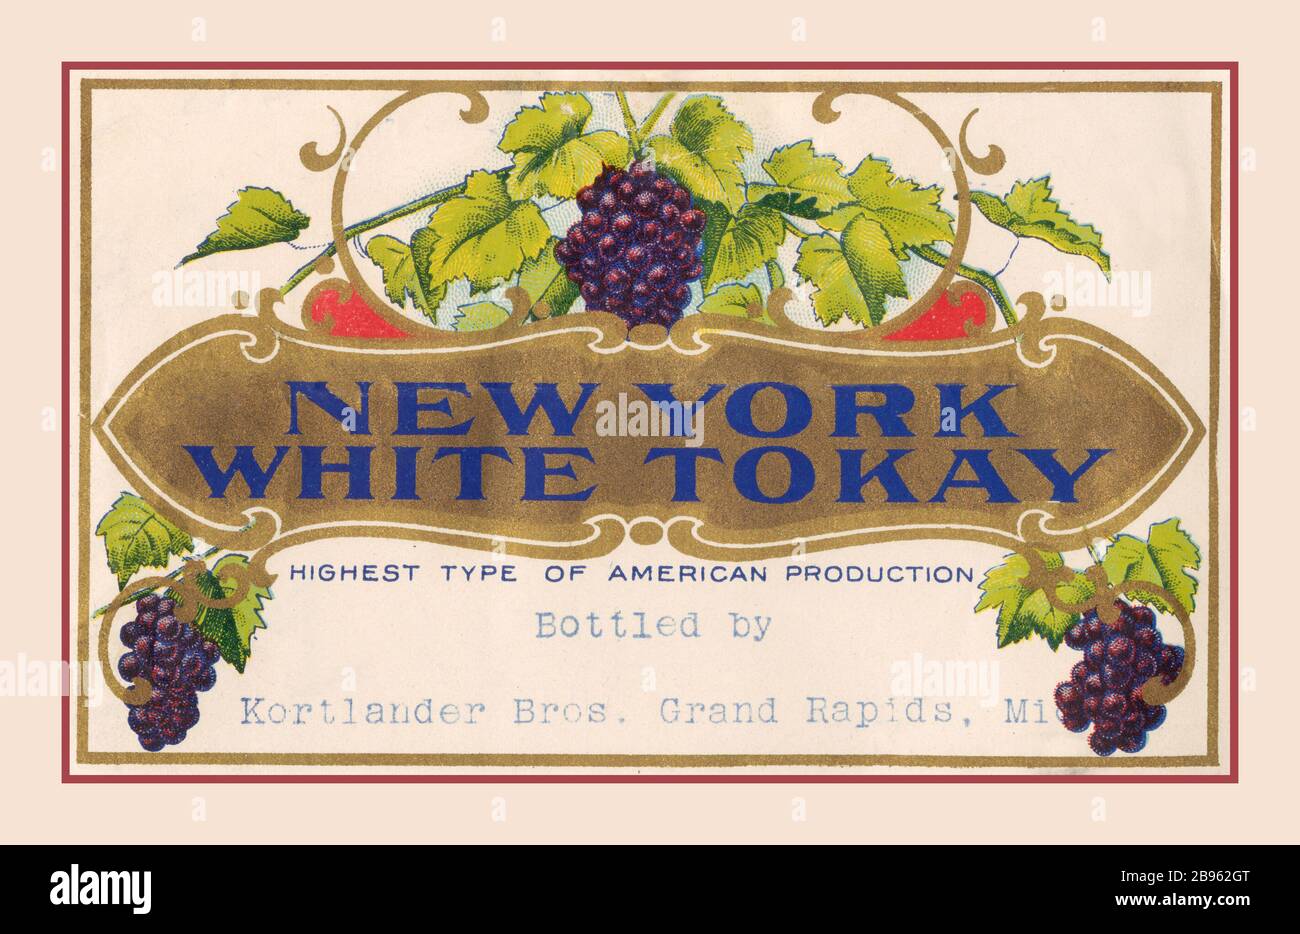 WHITE TOKAY New York White Tokay verzierte Weinetiketten Archiv Datum: CA. 1900-1925 Song of the Vine: A History of Wine. Bottle Labels abgefüllt von Korlander Bros. Grand Rapids Missouri USA Stockfoto